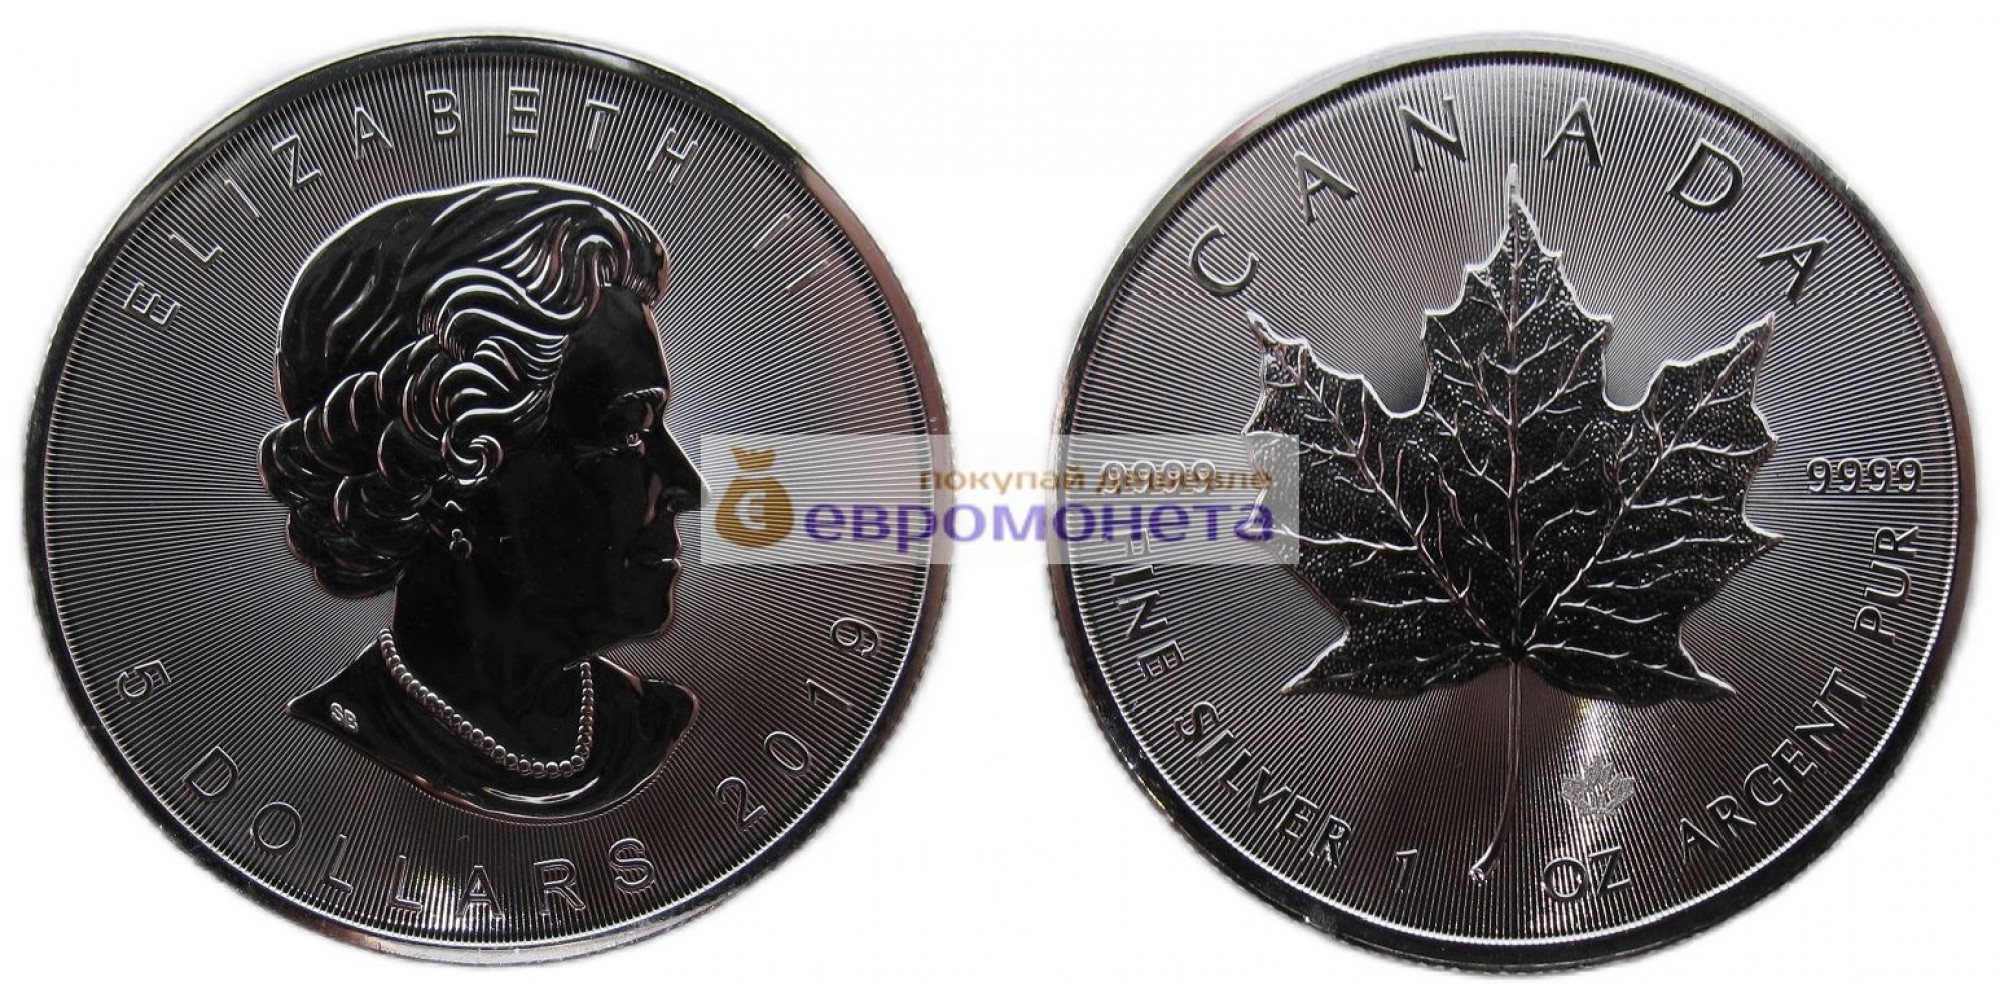 Канада 5 долларов 2019 год Кленовый лист (маленький лист под большим). Серебро унция 999 пробы